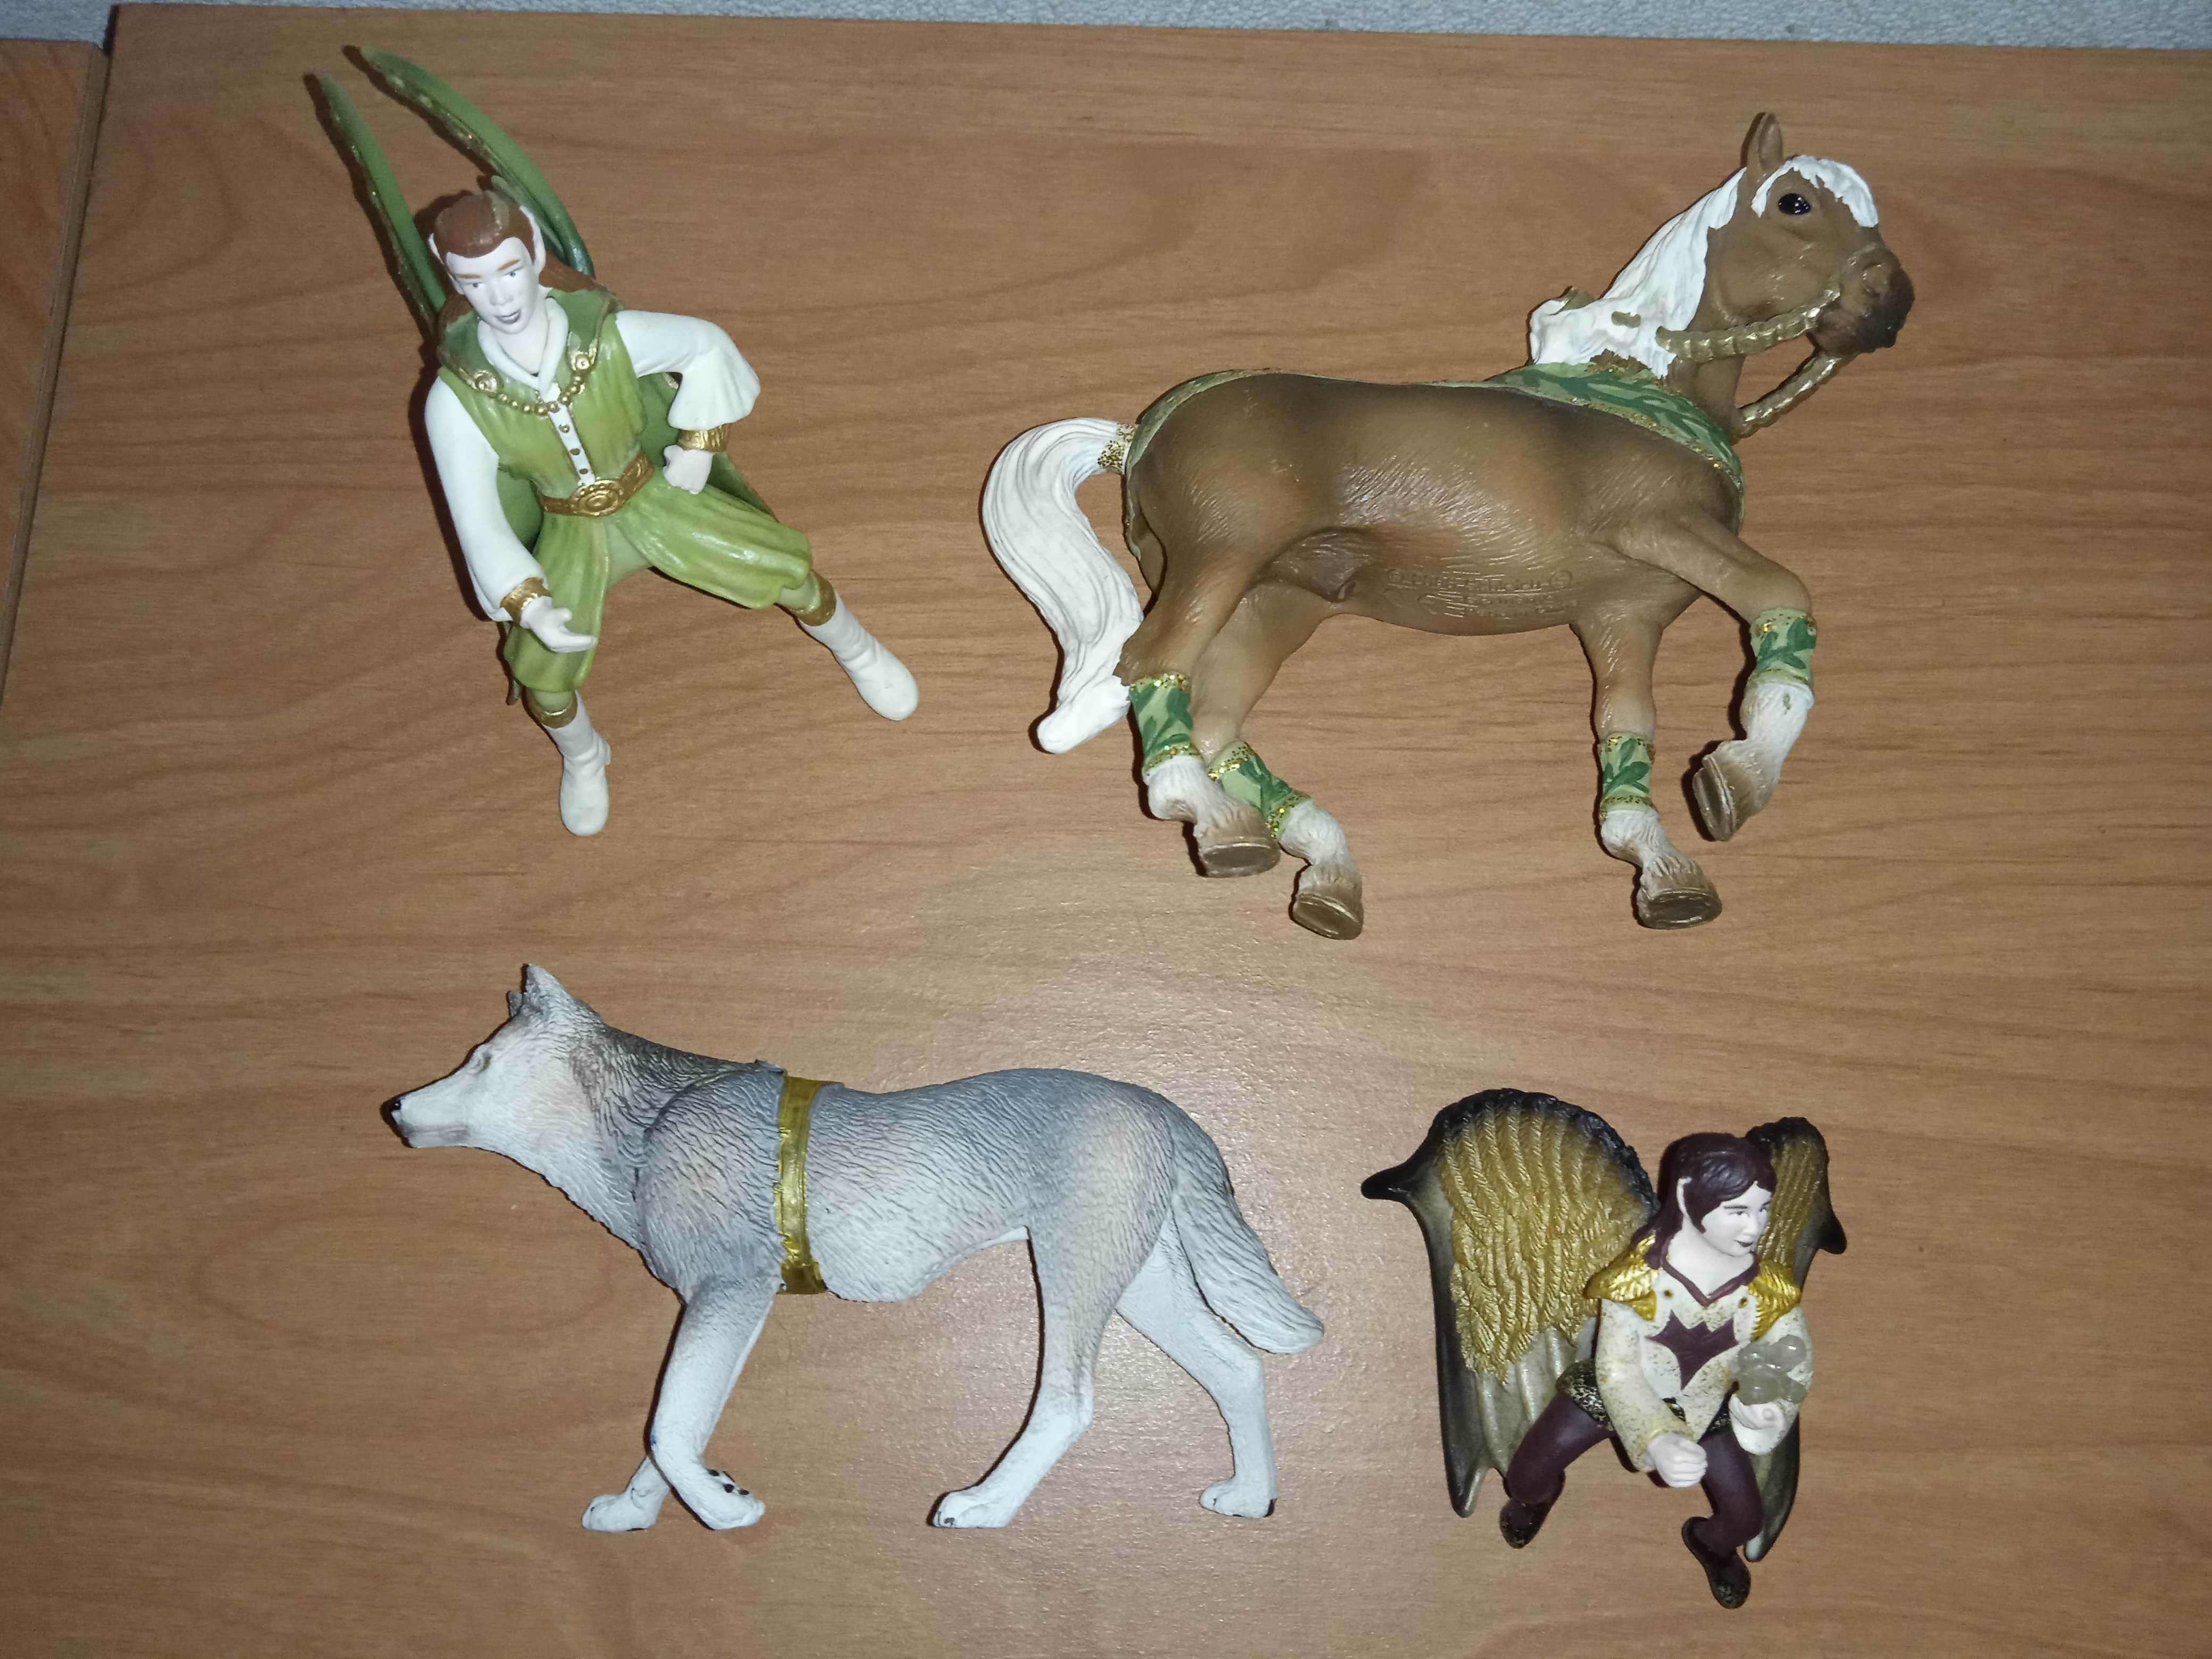 Zabawkowe figurki elfów